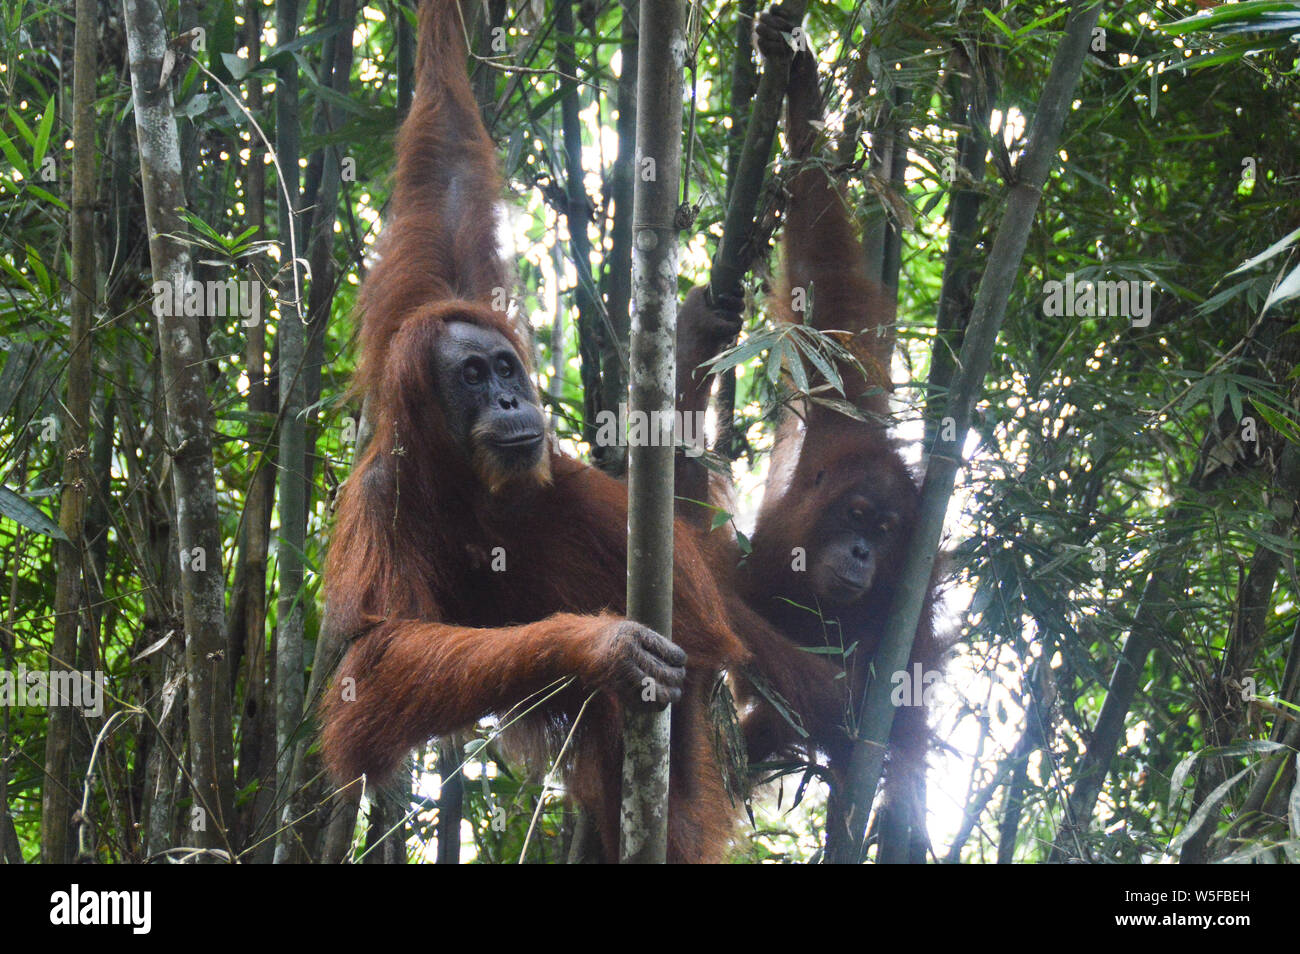 Les orangs-outans de Sumatra Nord sauvage repéré lors d'une randonnée dans la jungle dans le parc national de Gunung Leuser à Bukit Lawang le Nord de Sumatra, Indonésie Banque D'Images